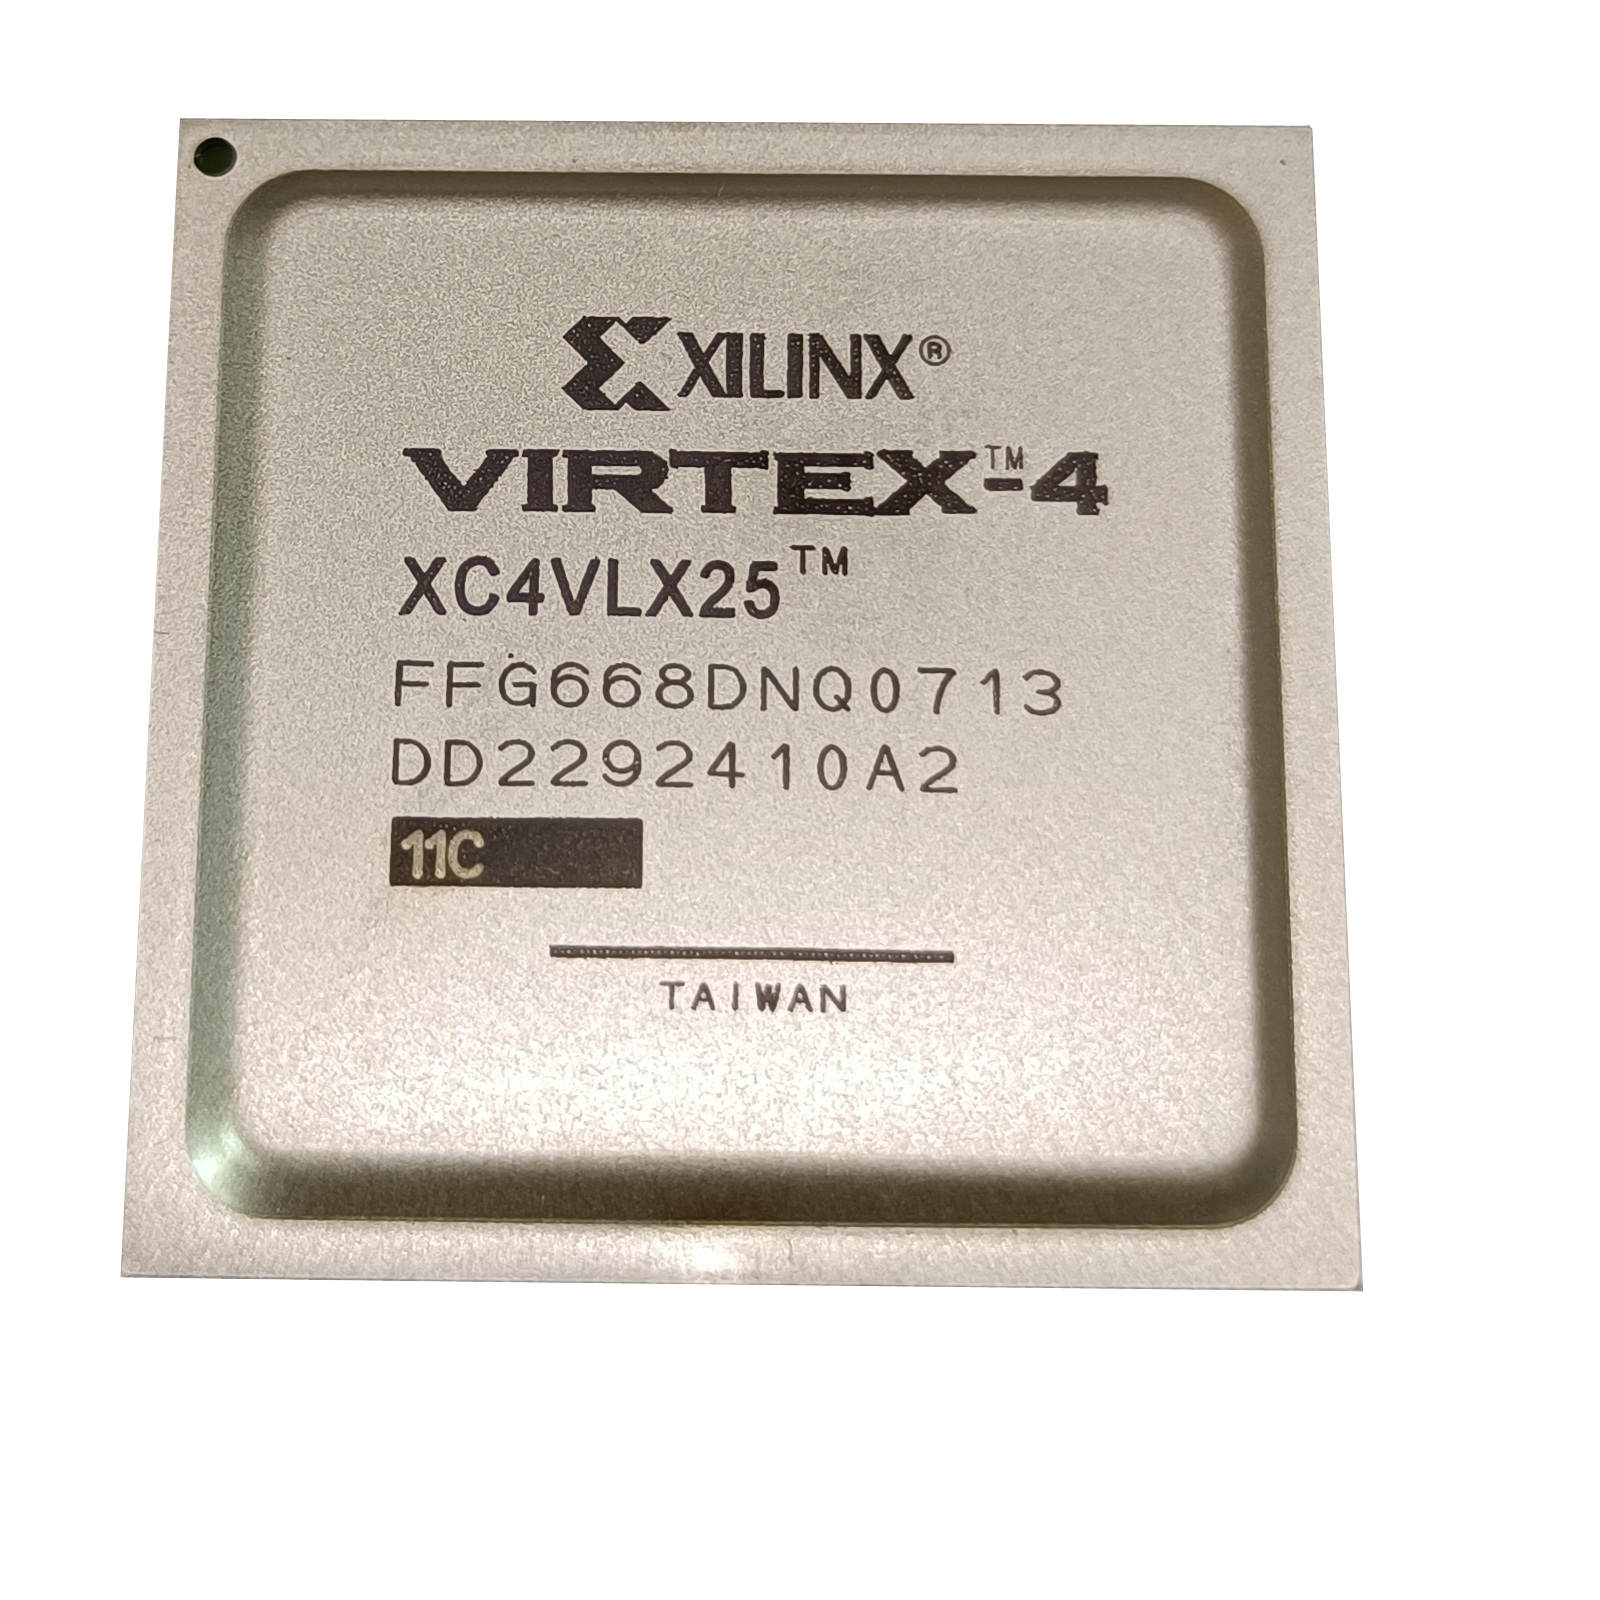 نکته خرید - قیمت روز آی سی زایلینکس مدل VIRTEX 4 - XC4VLX25 FFG668C خرید